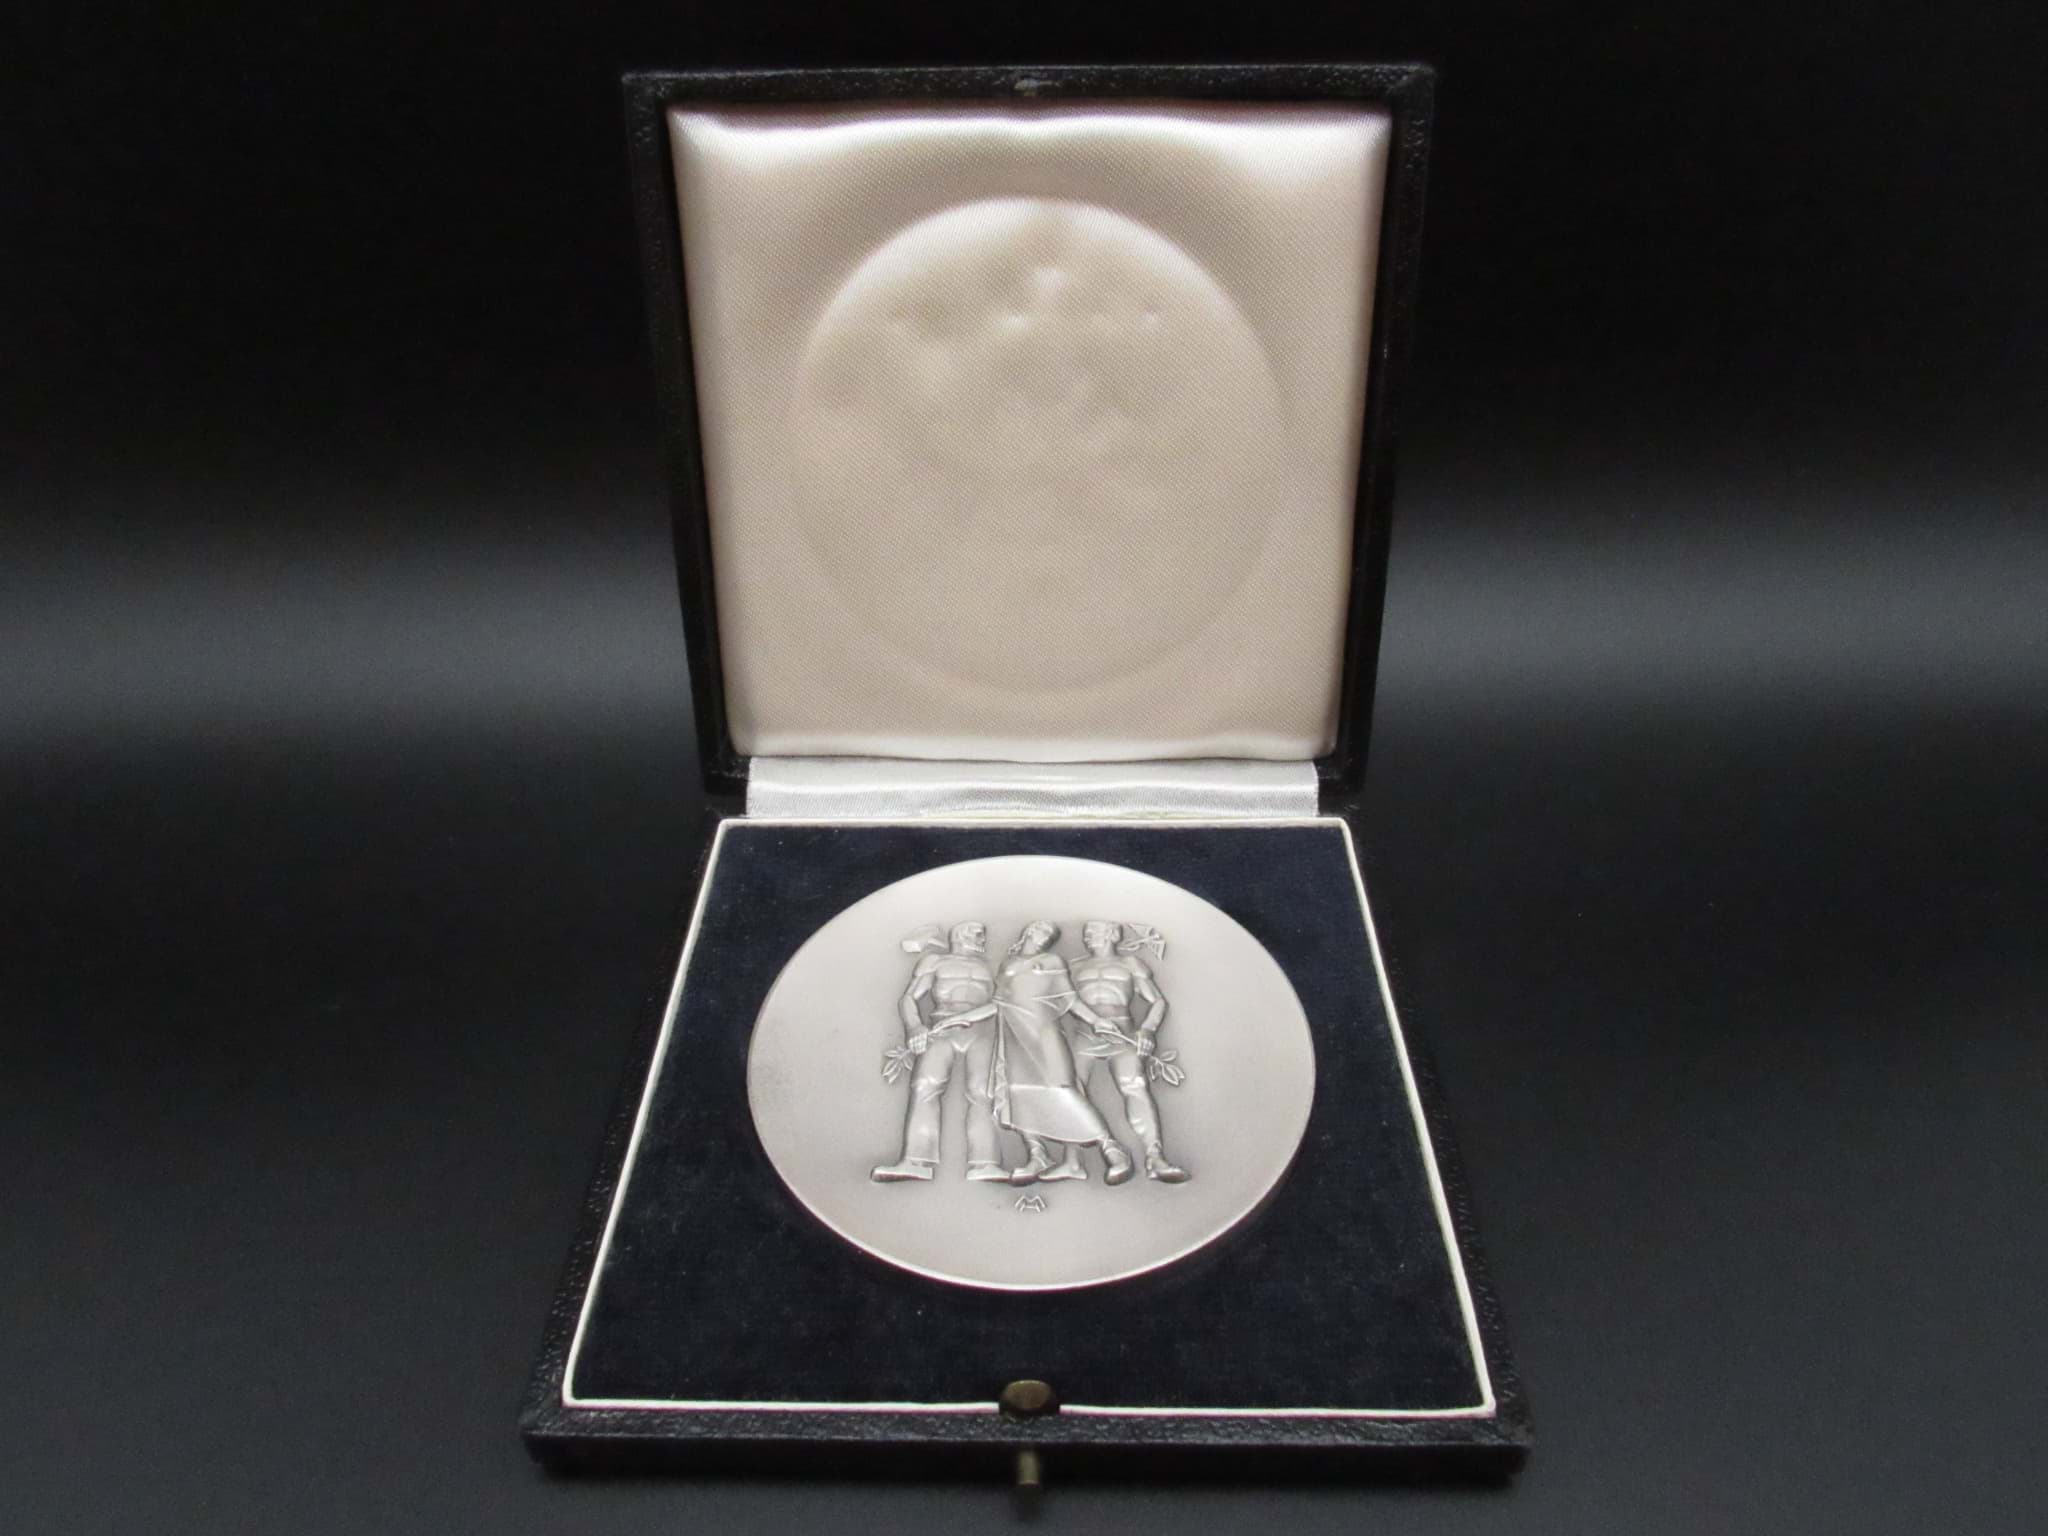 Obraz Wirtschafts-Medaille mit Etui-Schachtel, für langjährige Mitarbeit, Silberauszeichnung